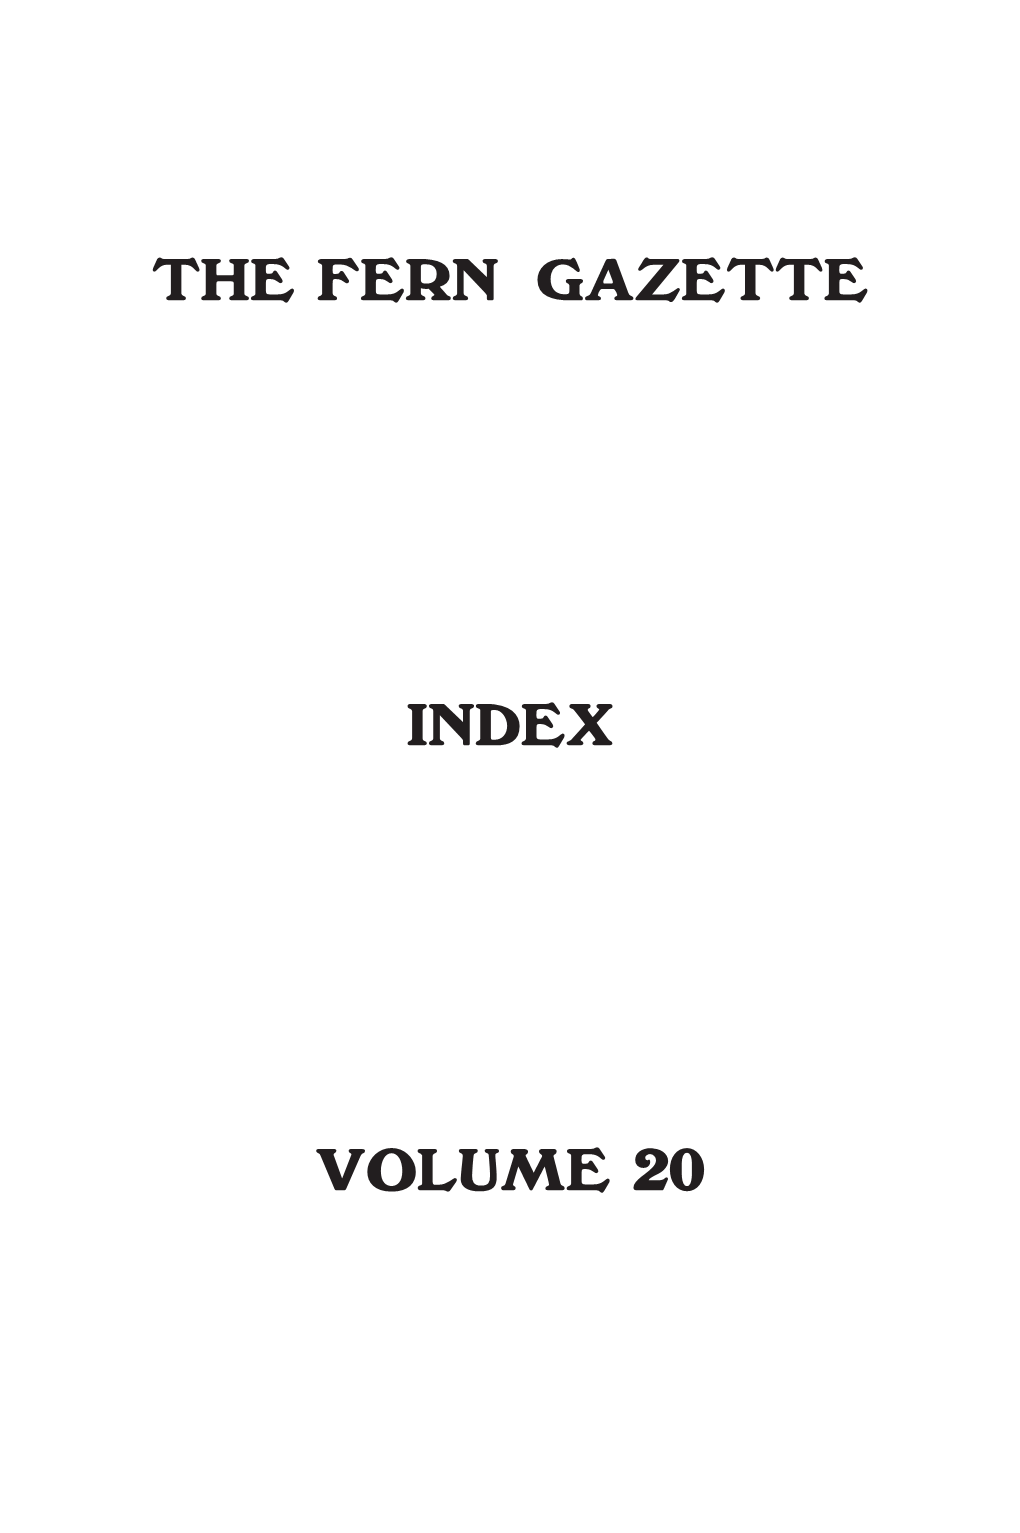 The Fern Gazette Index Volume 20